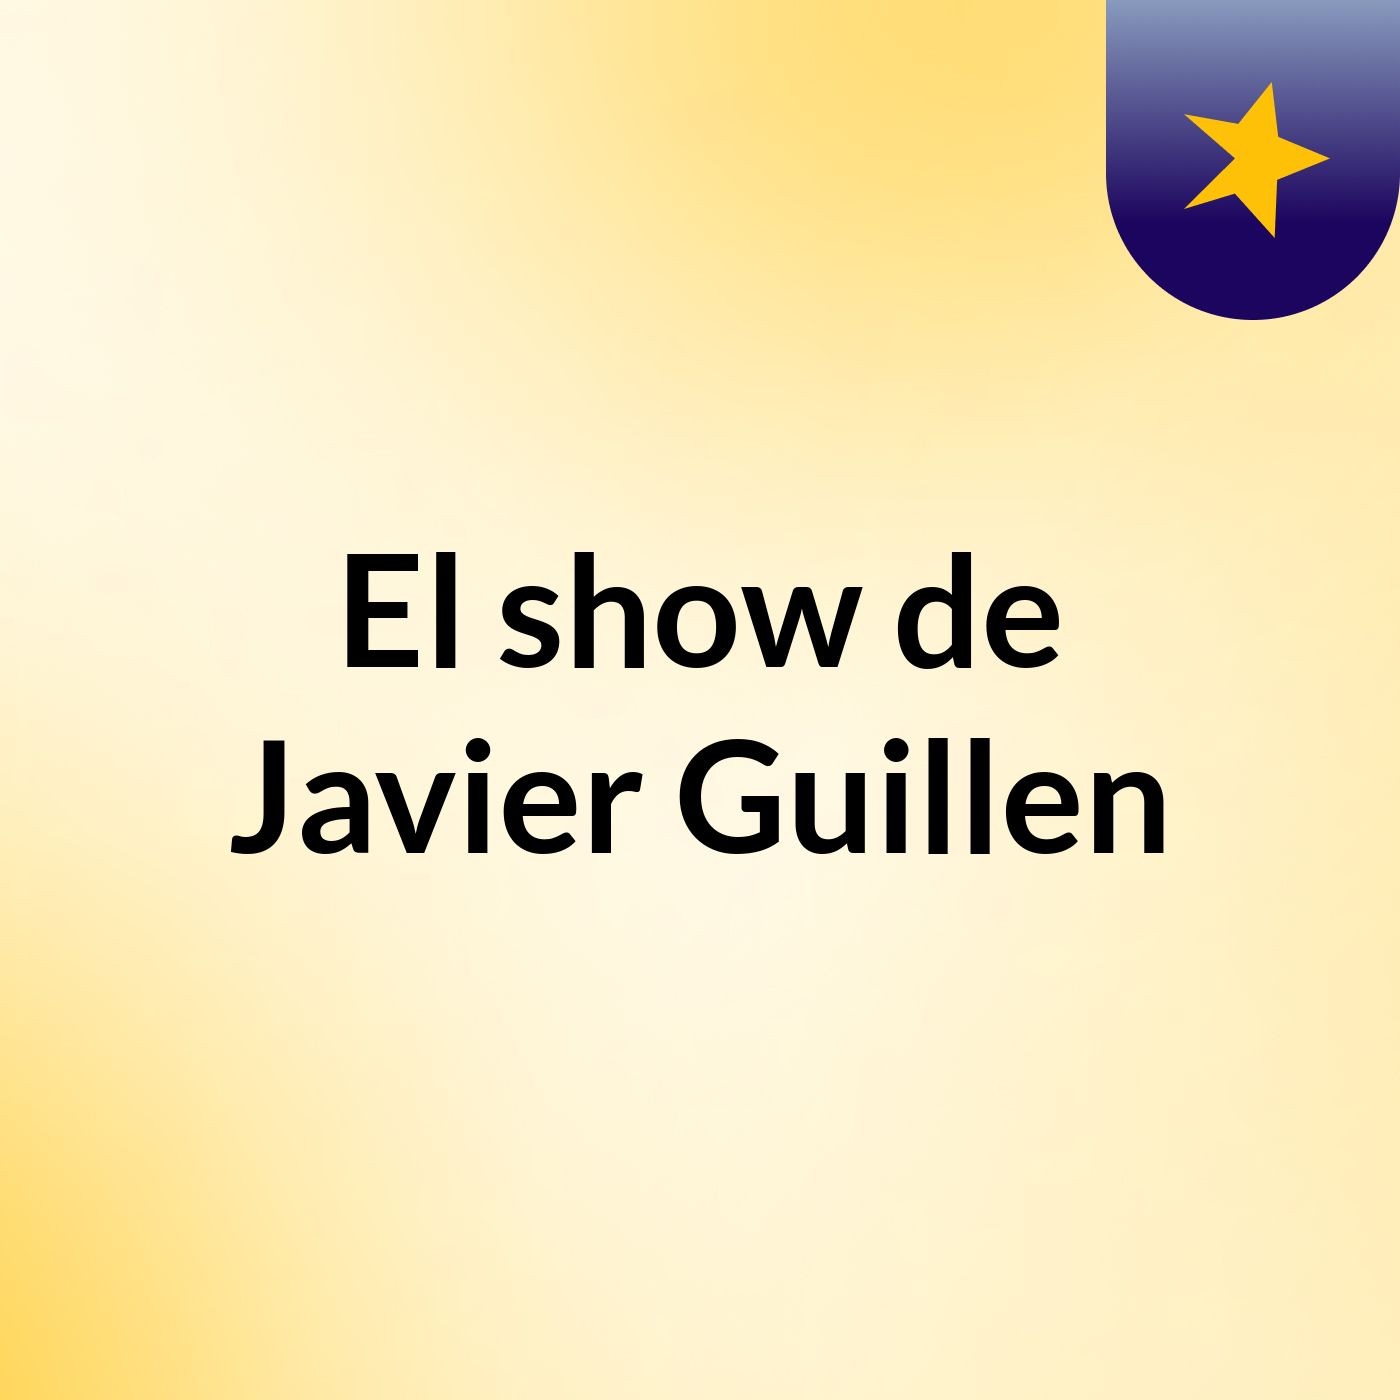 El show de Javier Guillen